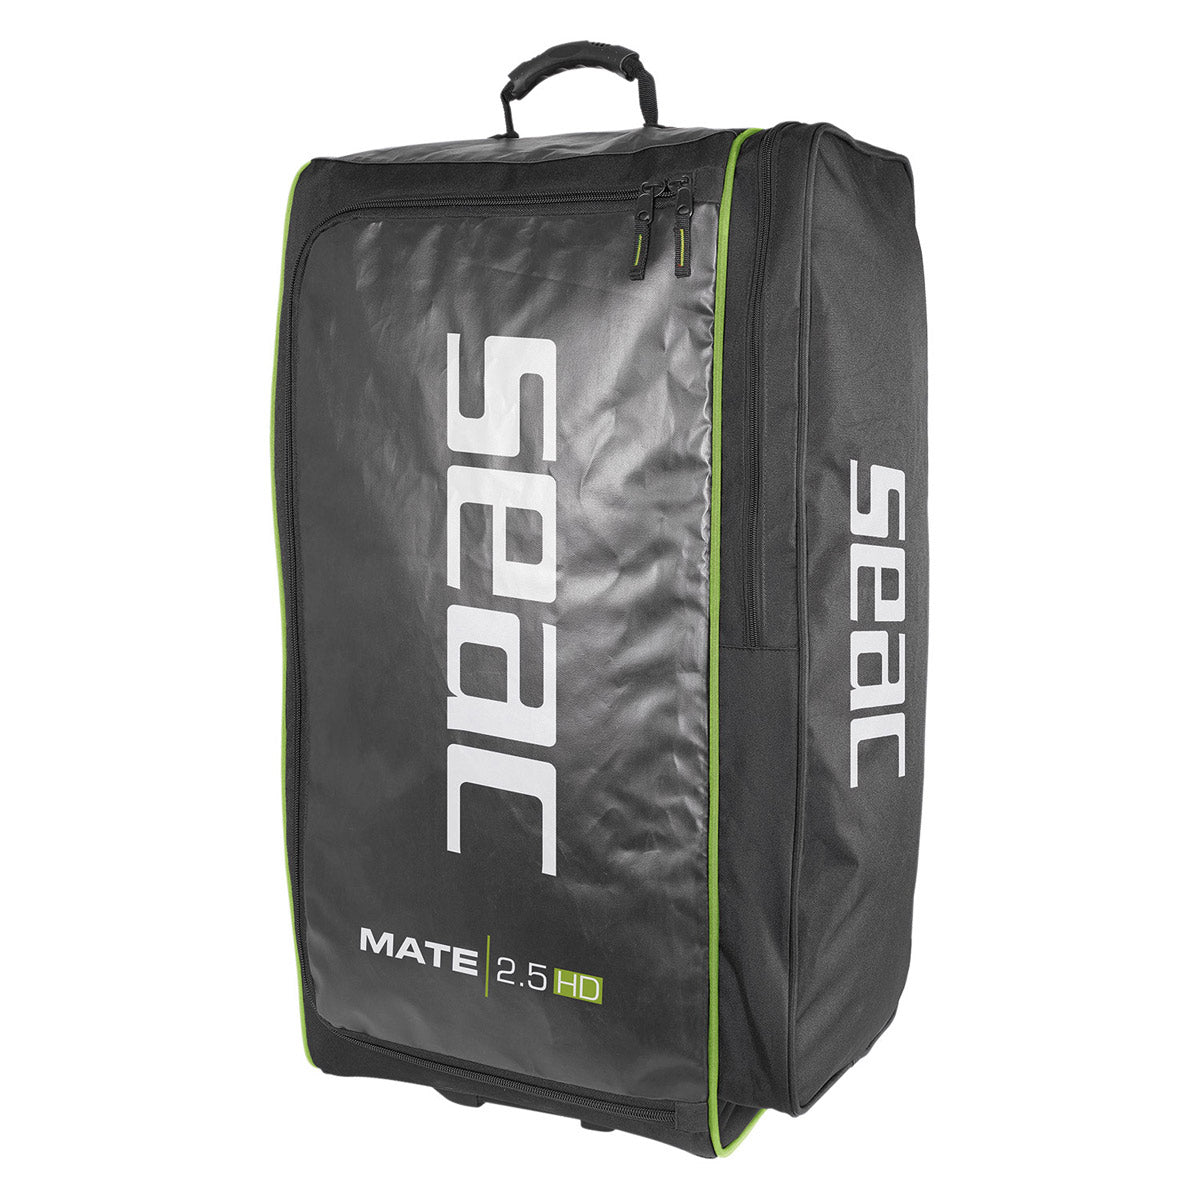 Seac Mate 2.5 HD Roller Bag